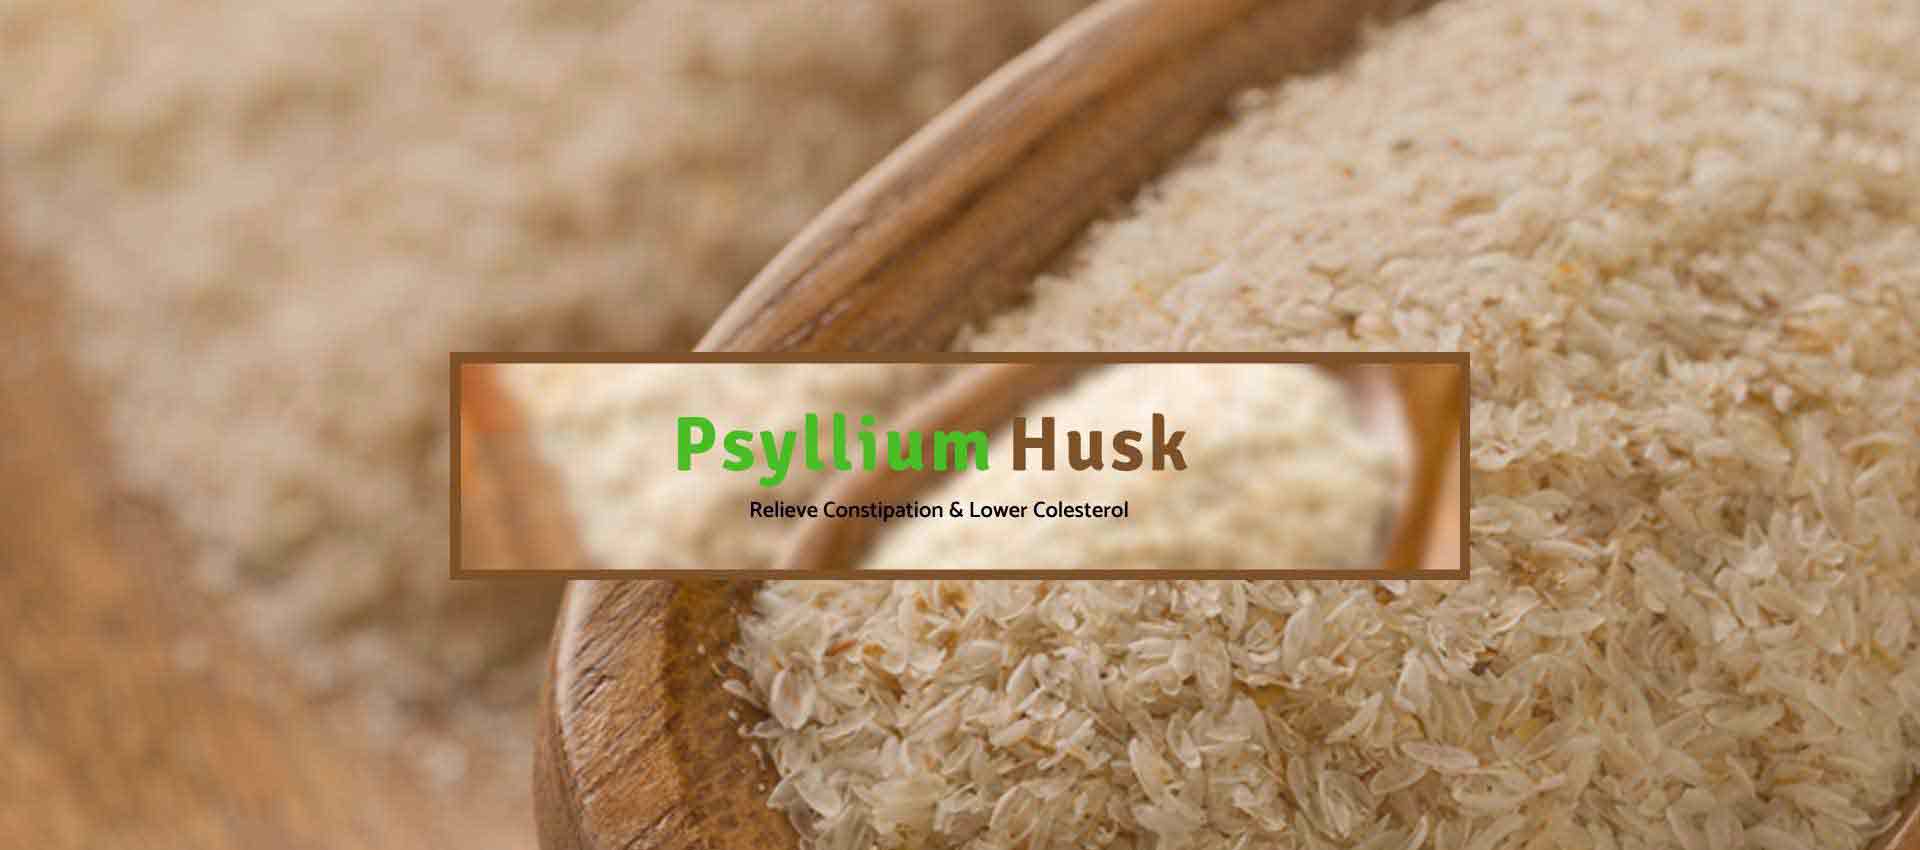 Psyllium Husk Manufacturers in Belgium